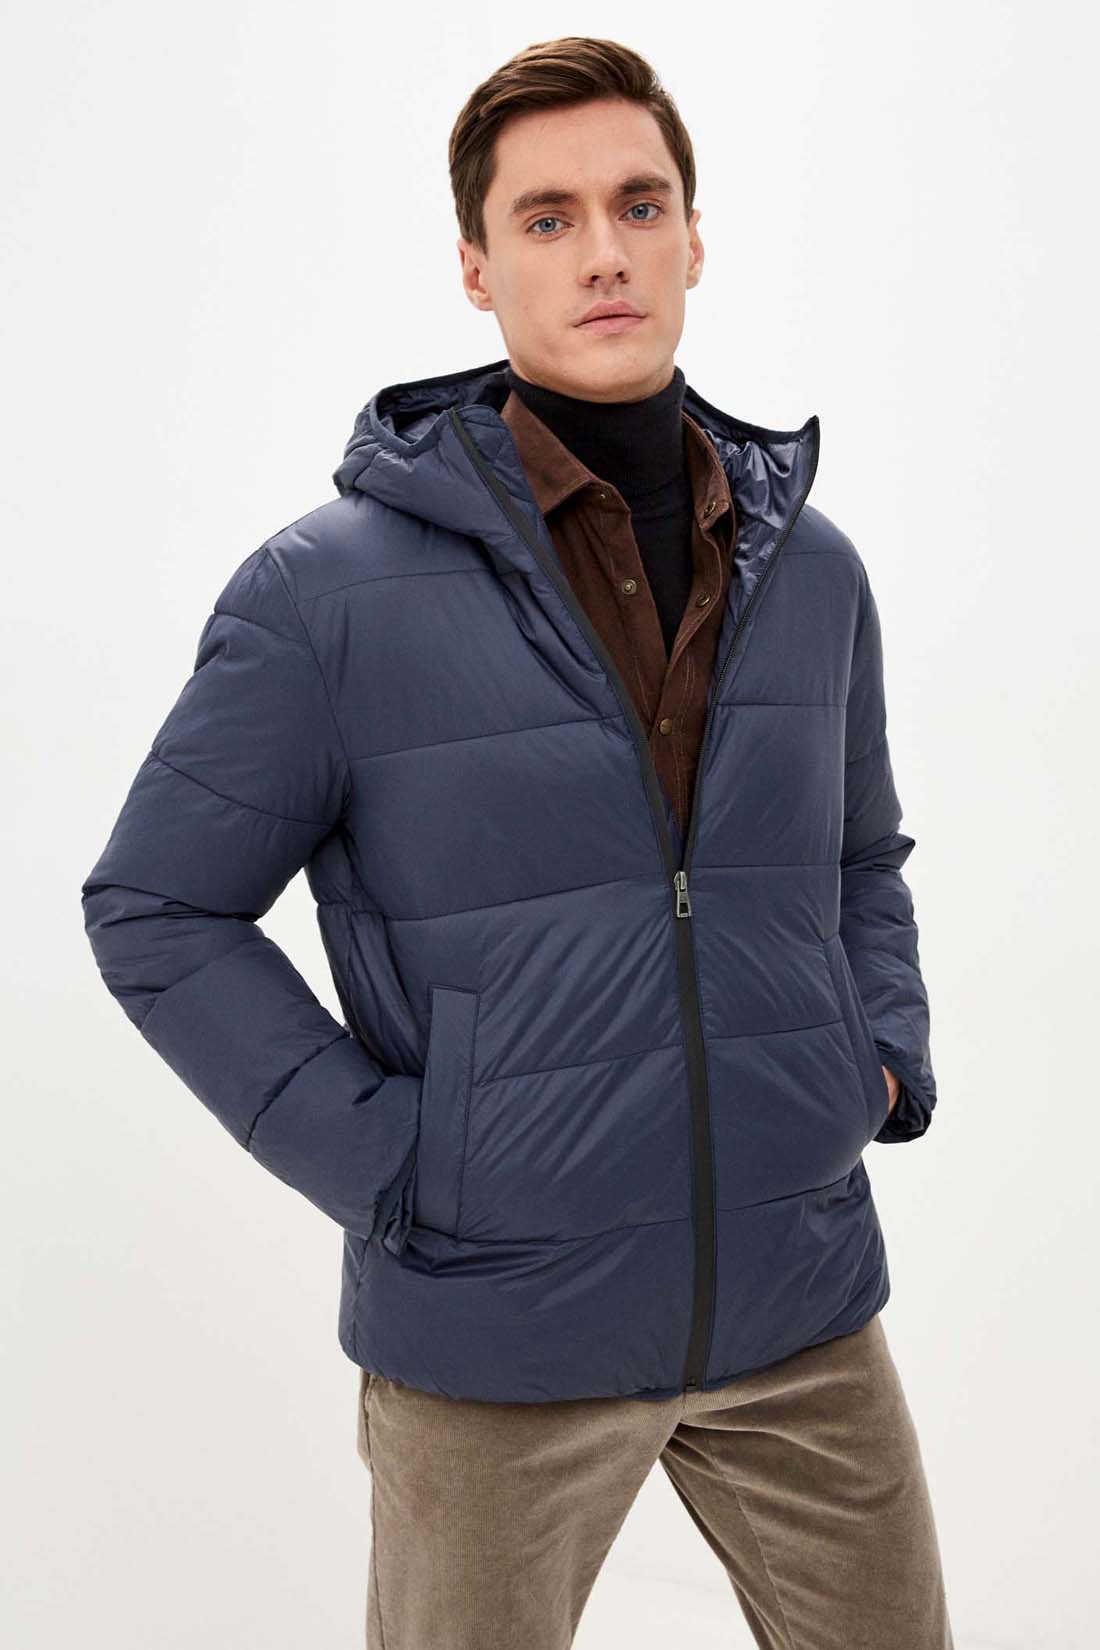 Куртка (Эко пух) (арт. baon B541701), размер XL, цвет синий Куртка (Эко пух) (арт. baon B541701) - фото 1